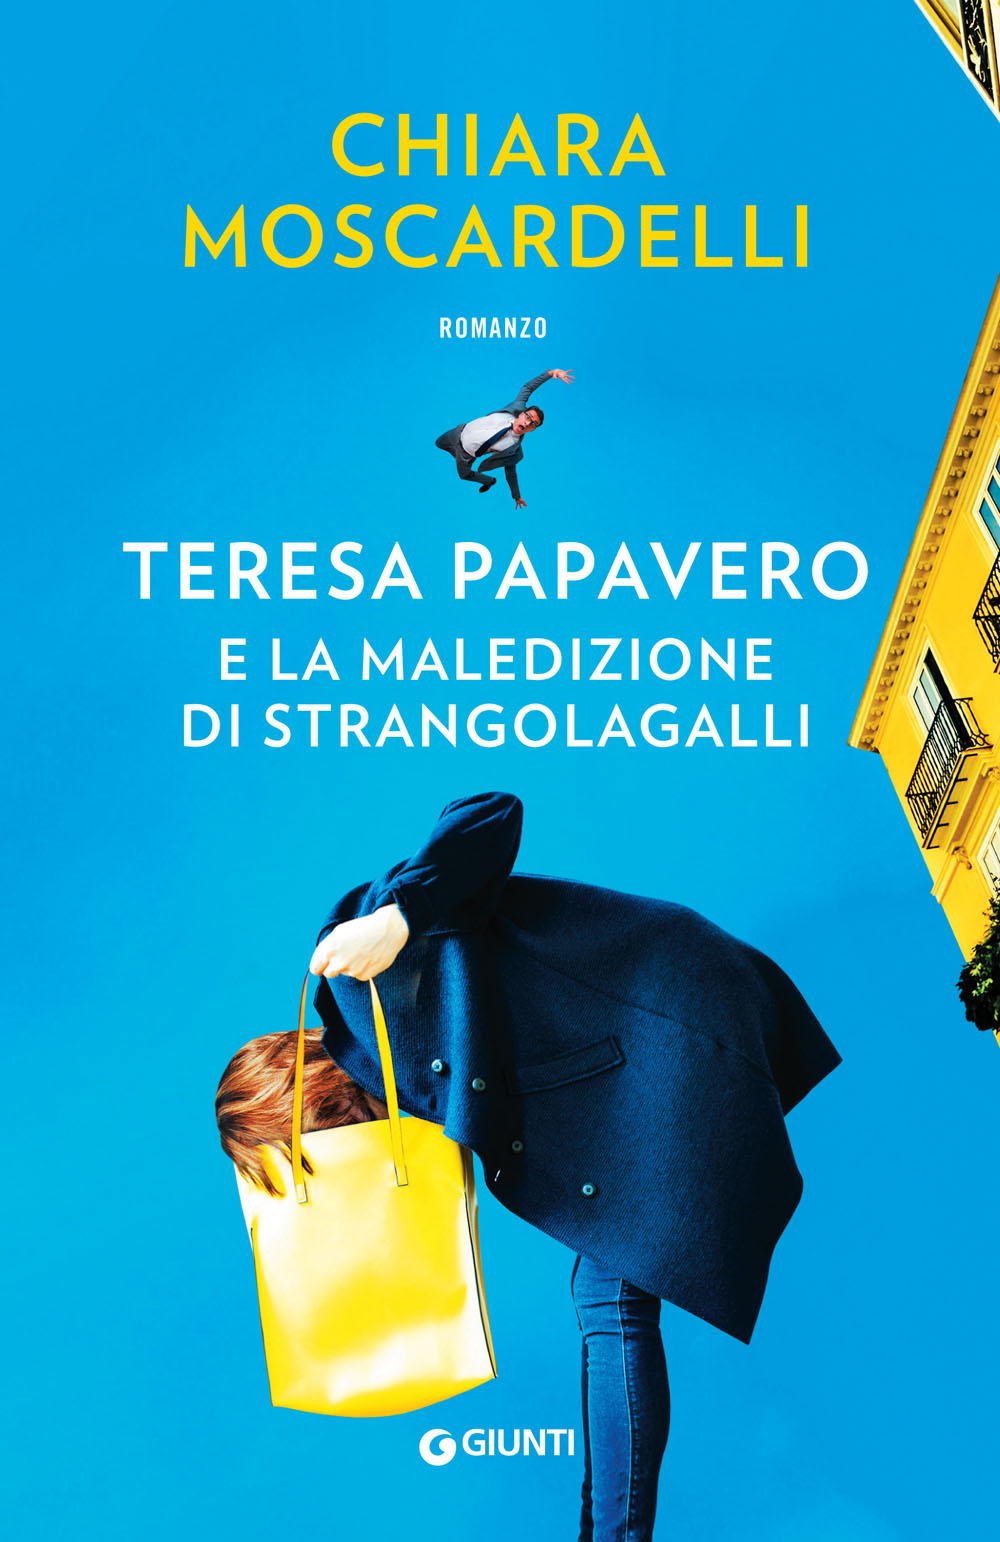 Teresa Papavero e la maledizione di Strangolagalli, di Chiara Moscardelli